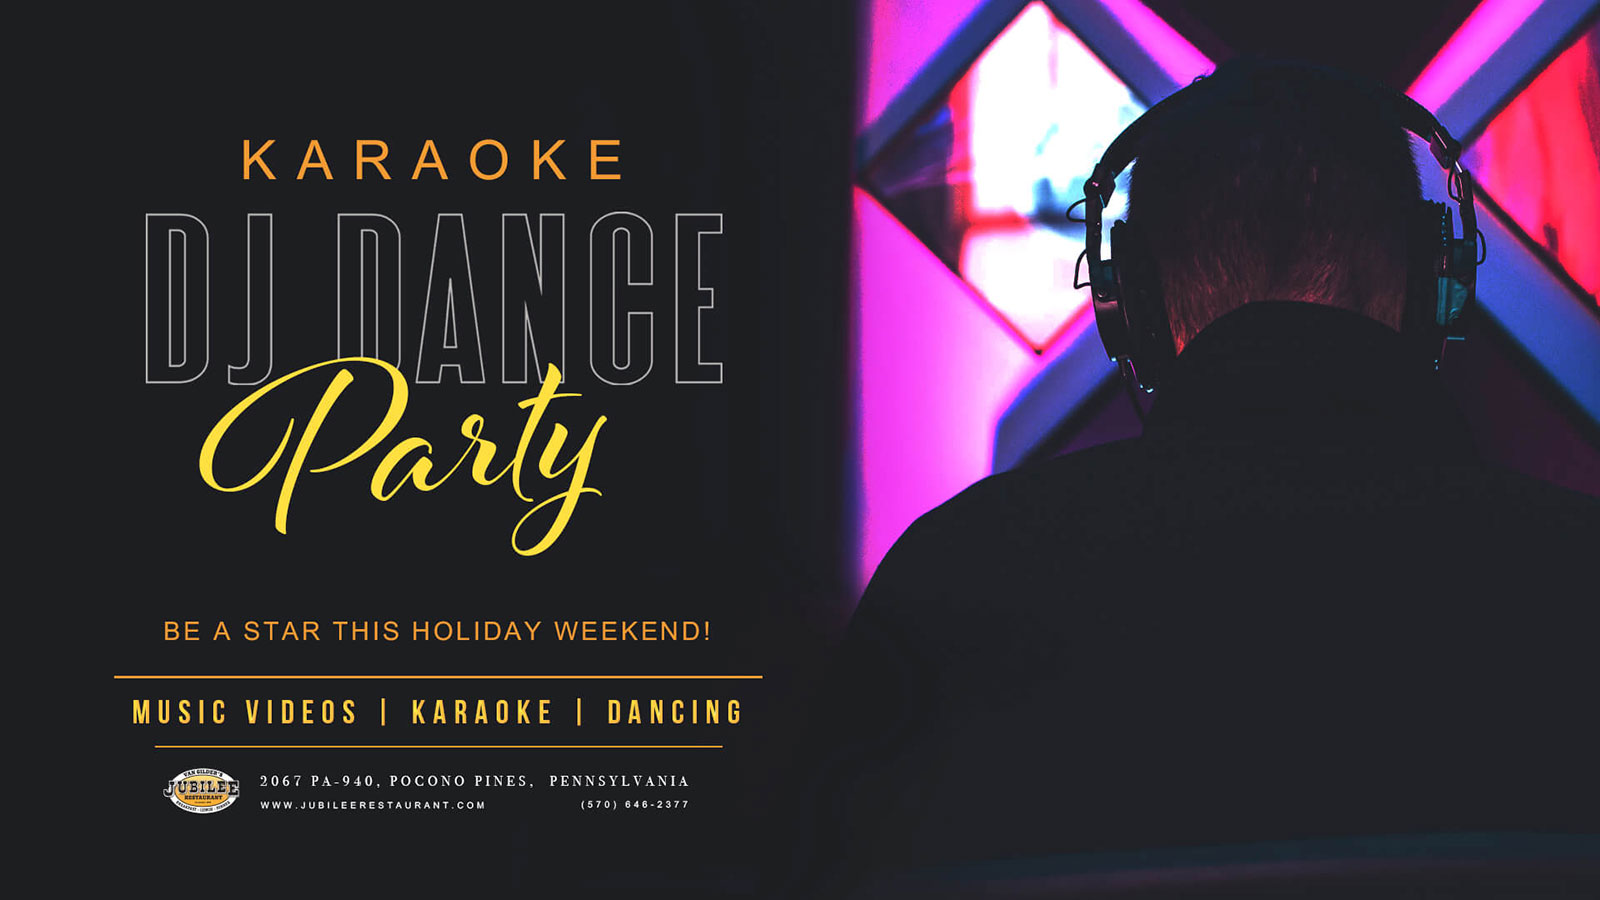 Karaoke DJ Dance Party